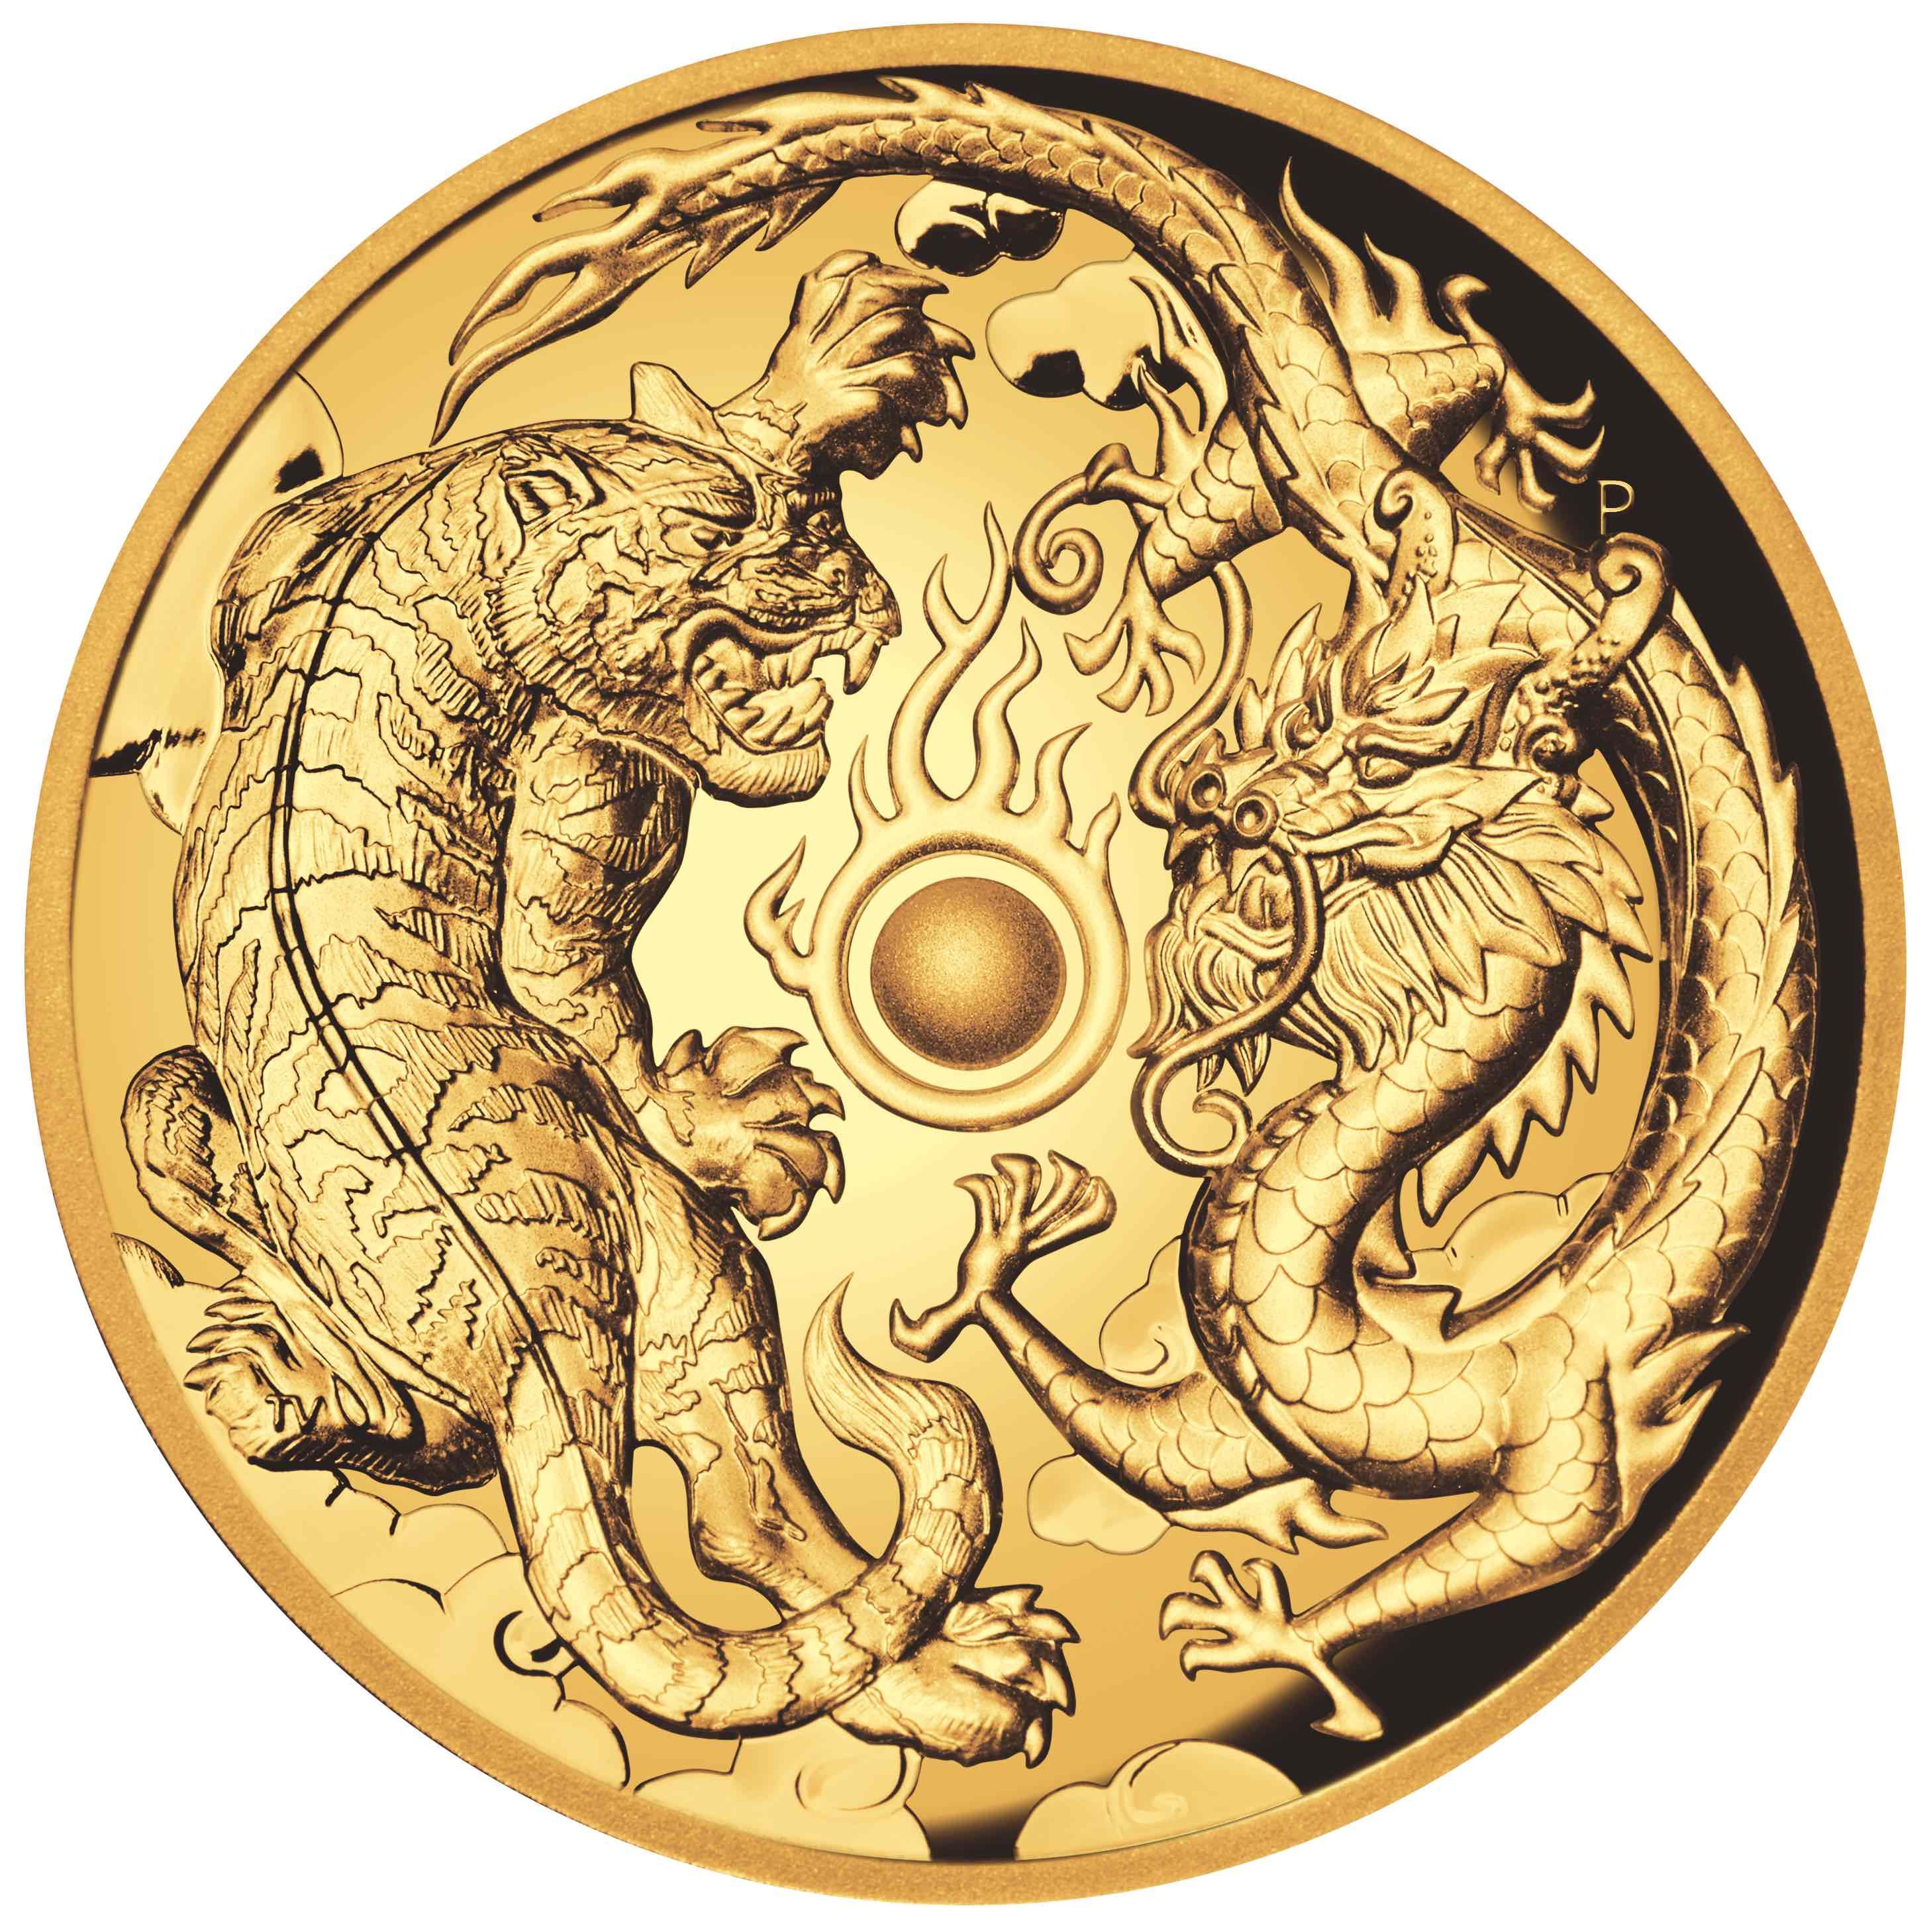 Smok i Tygrys 2018 2 uncje - złota moneta